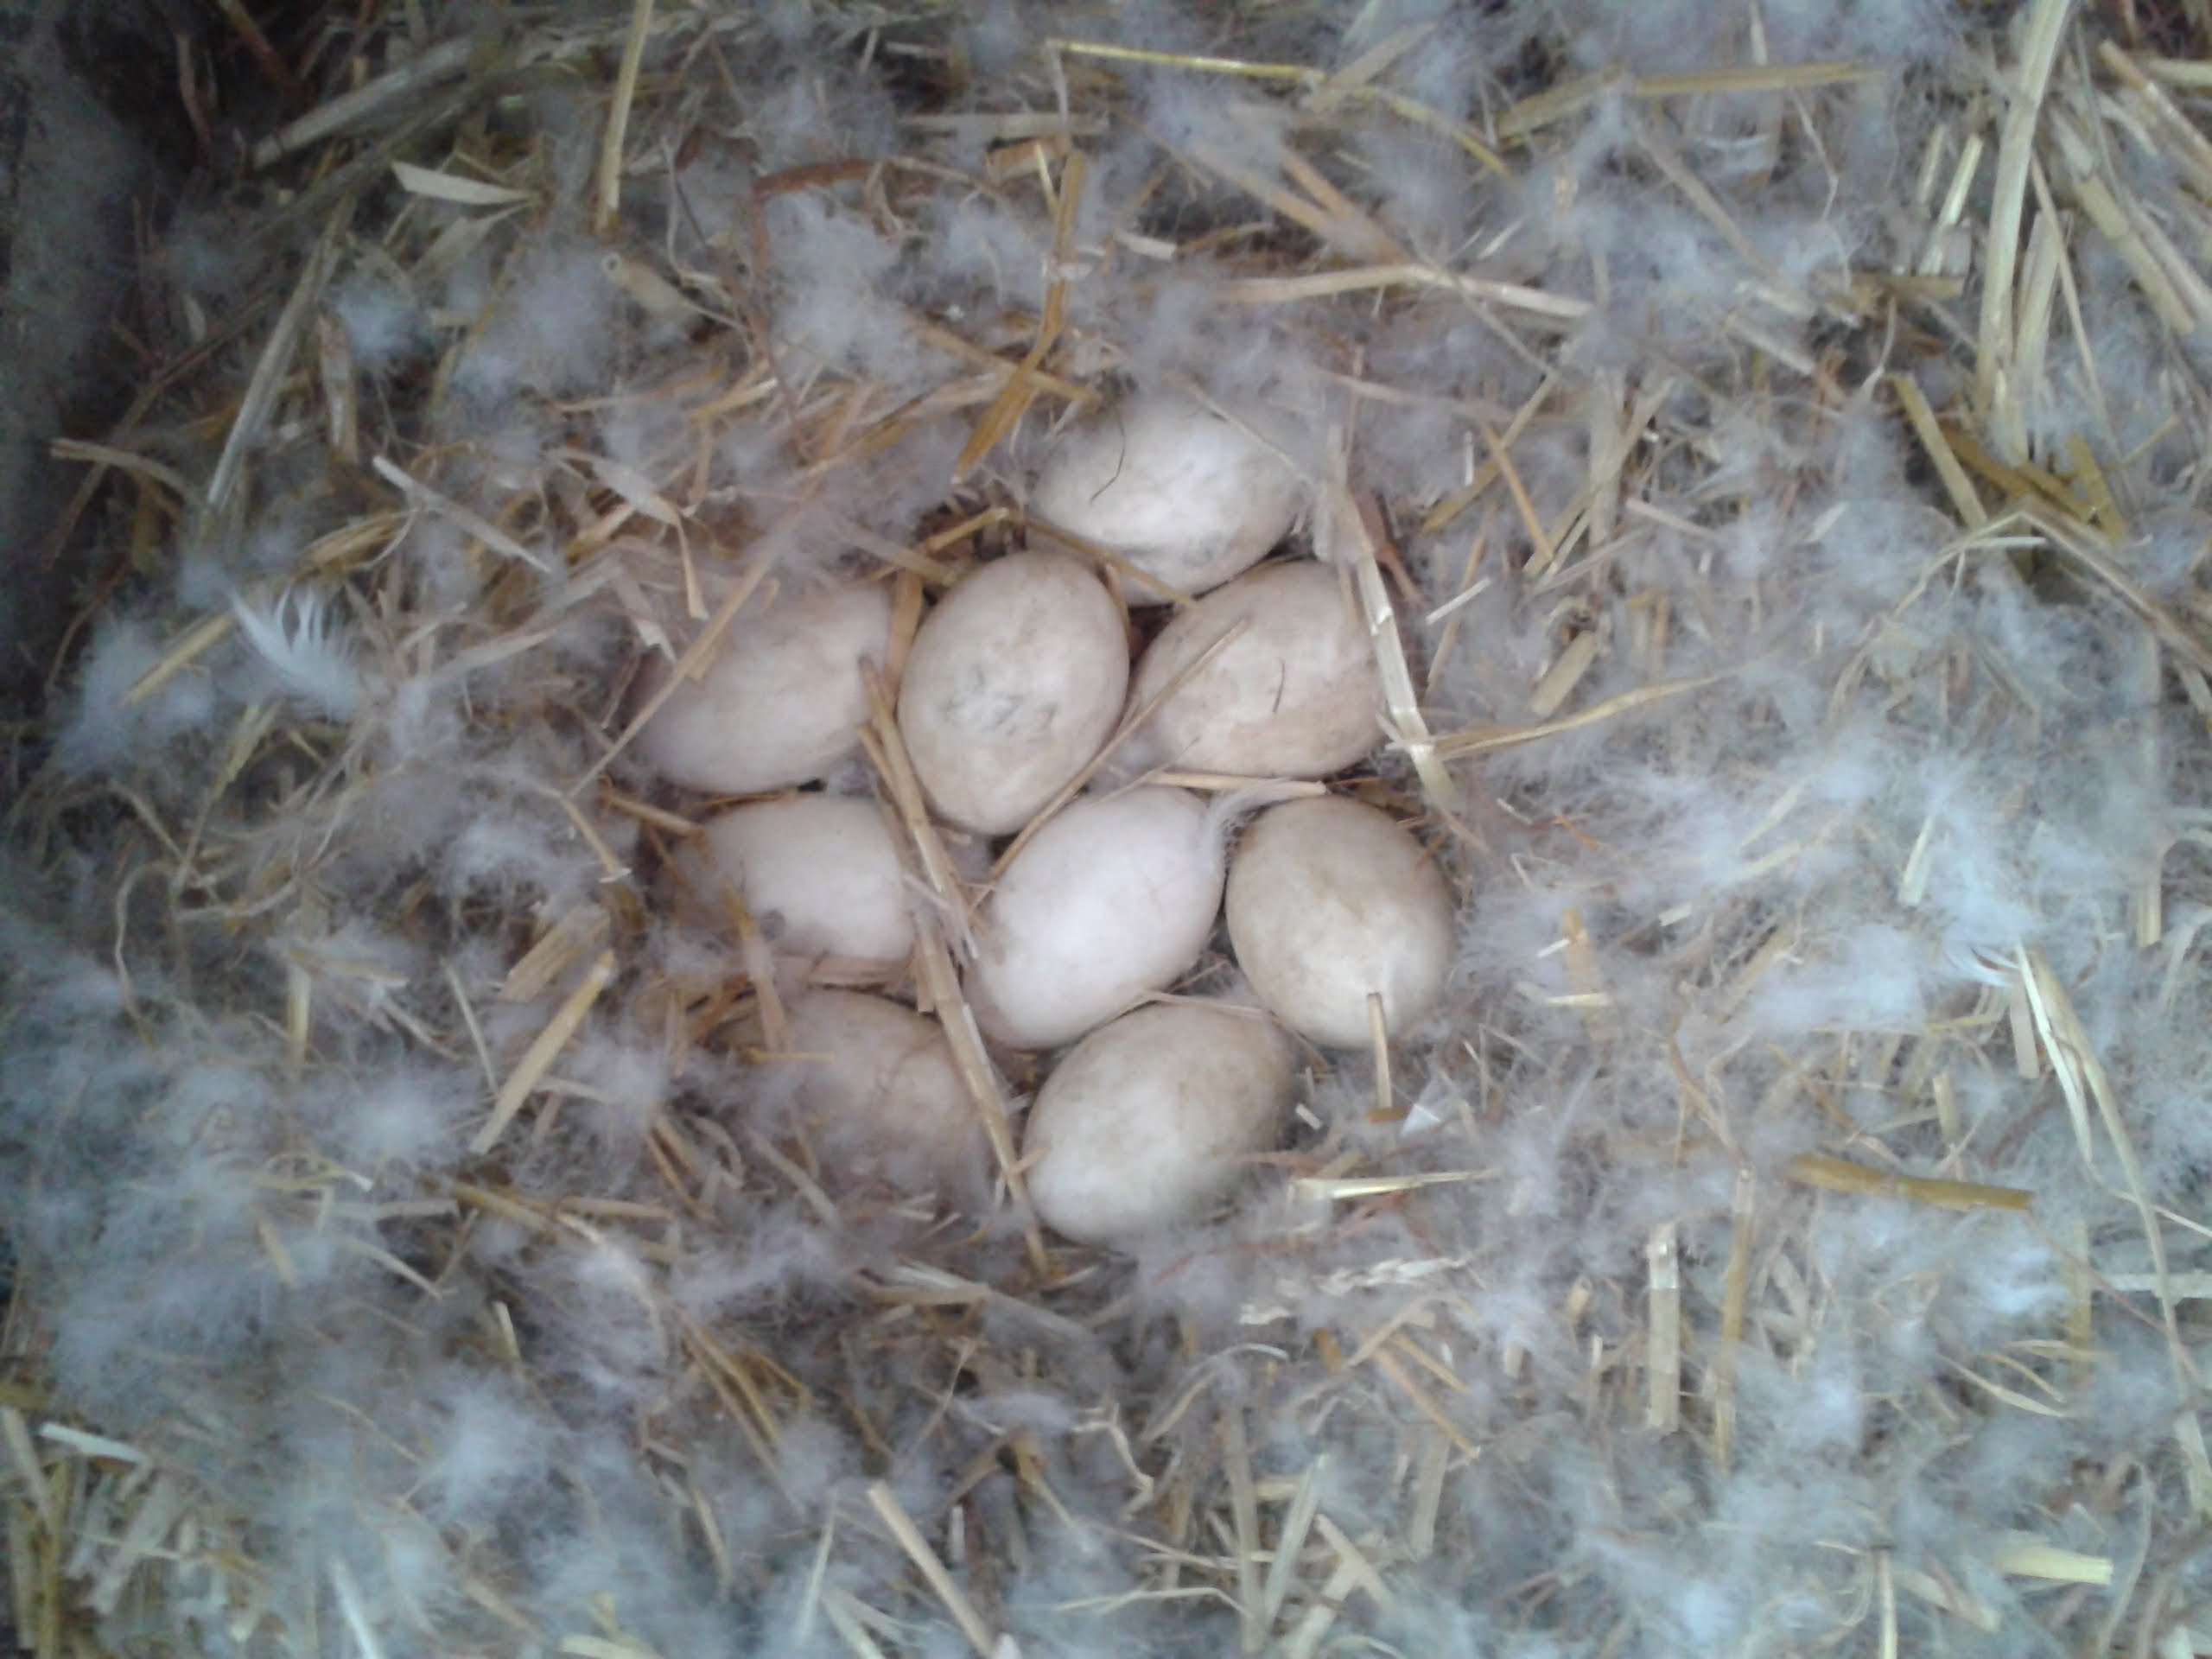 So sieht`s aus wenn Muddi Gans zum Ende der Legesaison ihre Eier selbst ausbrüten kann, fest sitzt. Das Nest ist kuschelig mit Daunen gepolstert. Wenn sie 1x am Tag kurz das Nest verlässt um sich zu entleeren und schnell ein paar Grashalme zu zupfen, deckt sie das Nest vorher fein zu. Damit die Eier warm bleiben.